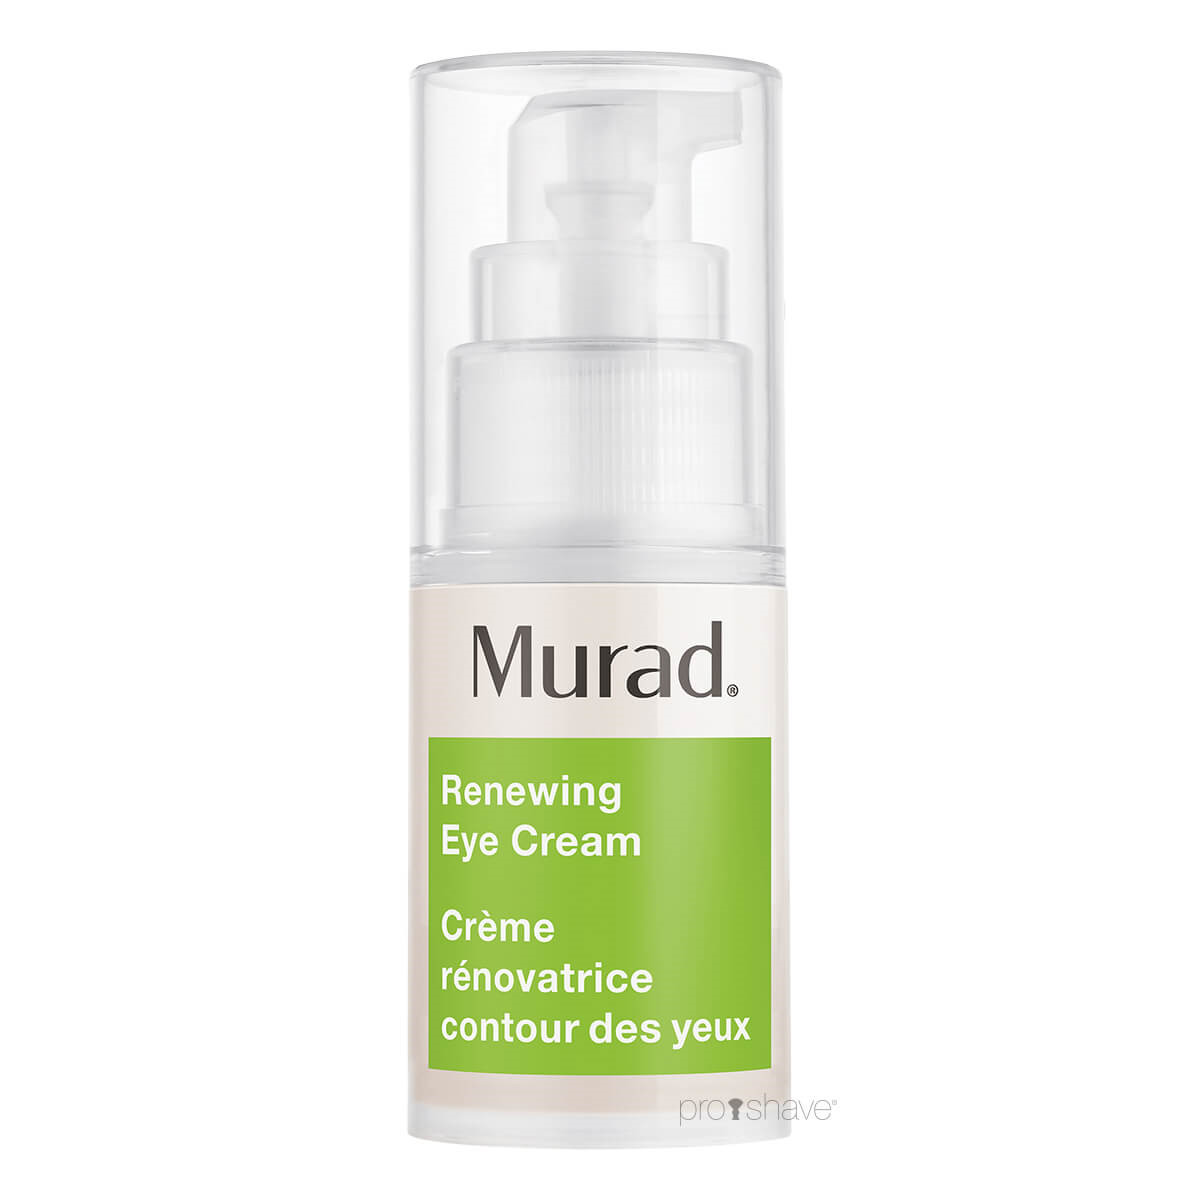 Murad Renewing Eye Cream, Resurgence, 15 ml.